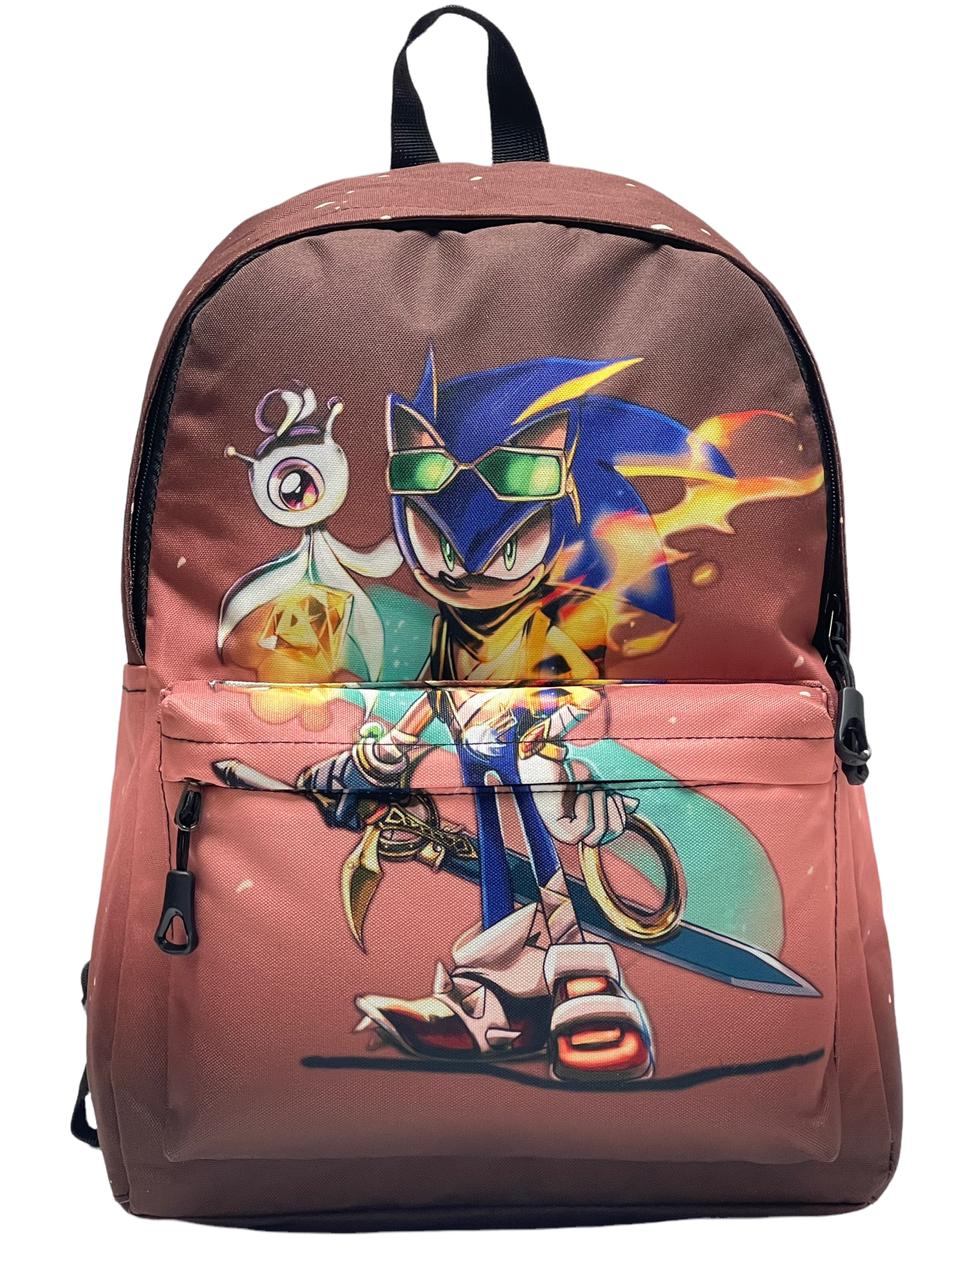 Рюкзак детский BAGS-ART Collection Sonic Sonic, коричневый, большой размер